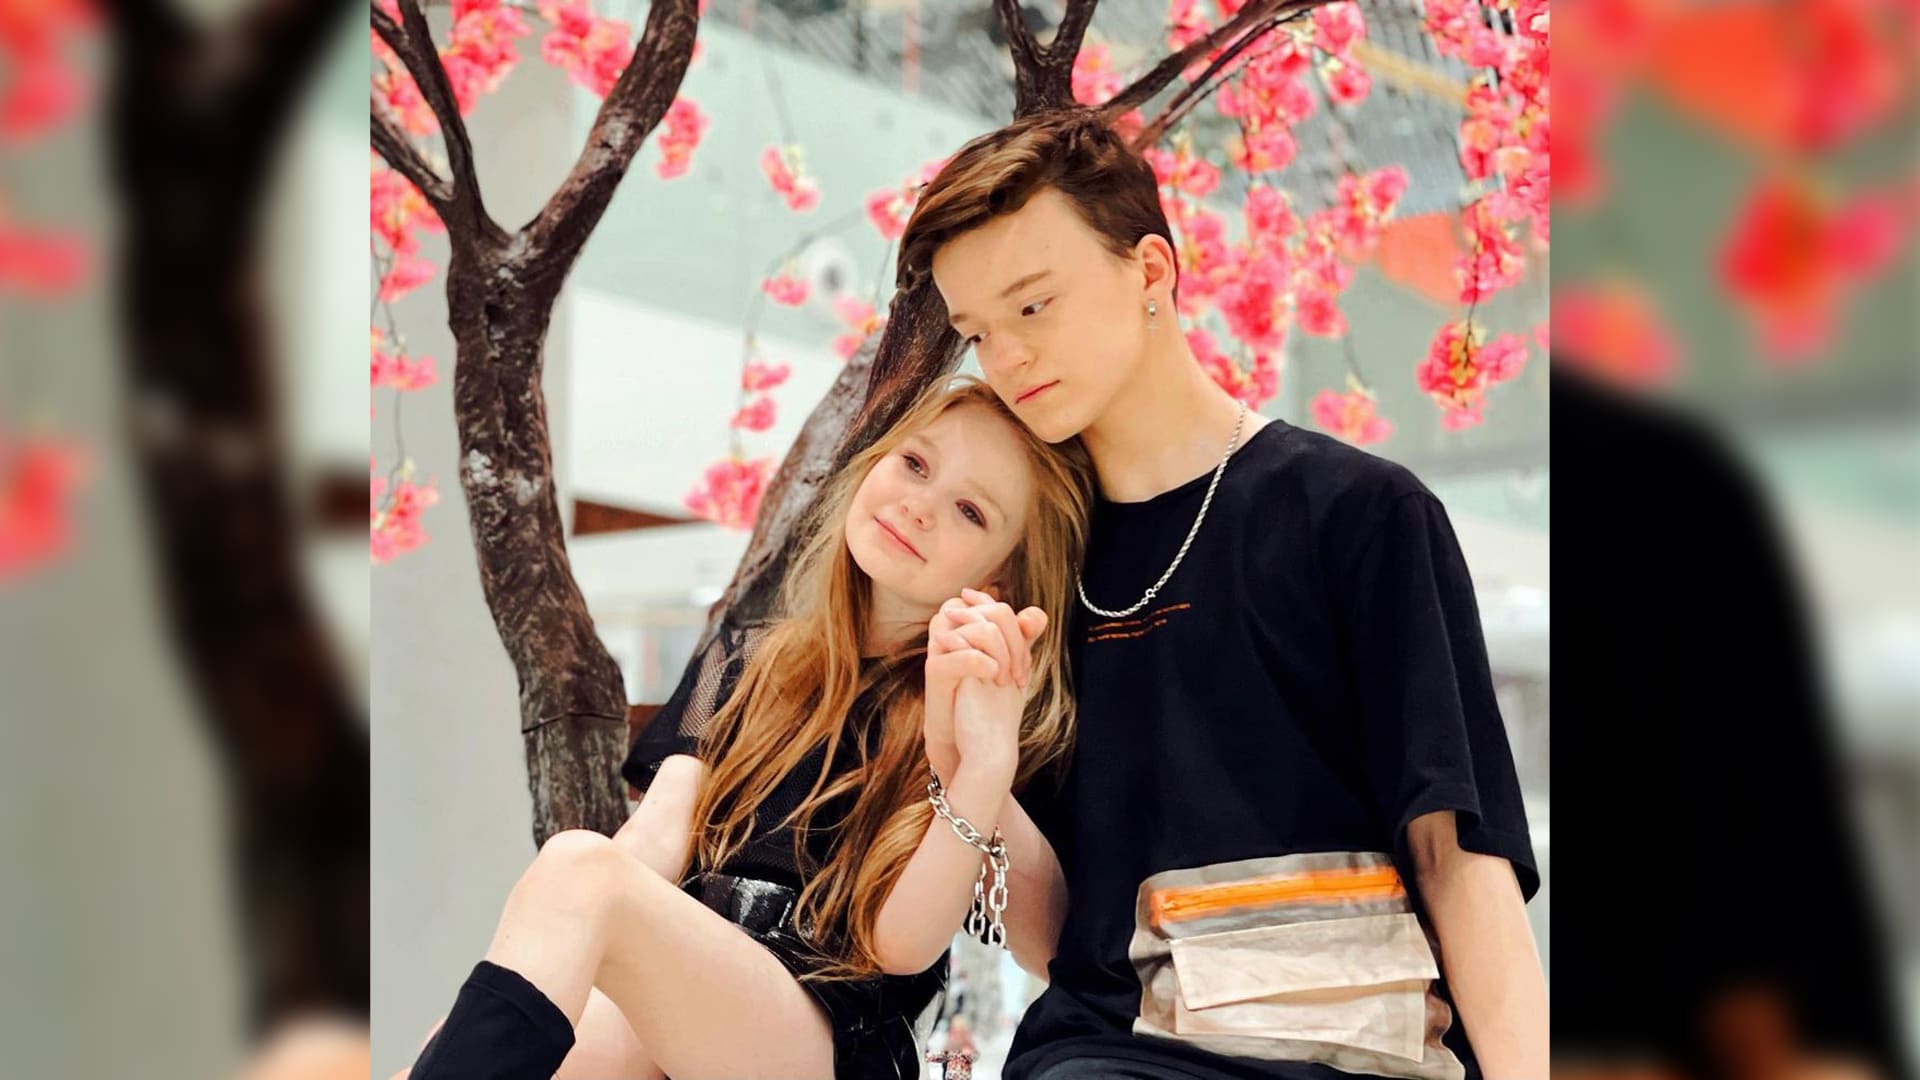 Osmiletá ukrajinská blogerka a modelka Milana Machanecová je známá především svým kontroverzním vztahem s 13letým influencerem Pavlem. 